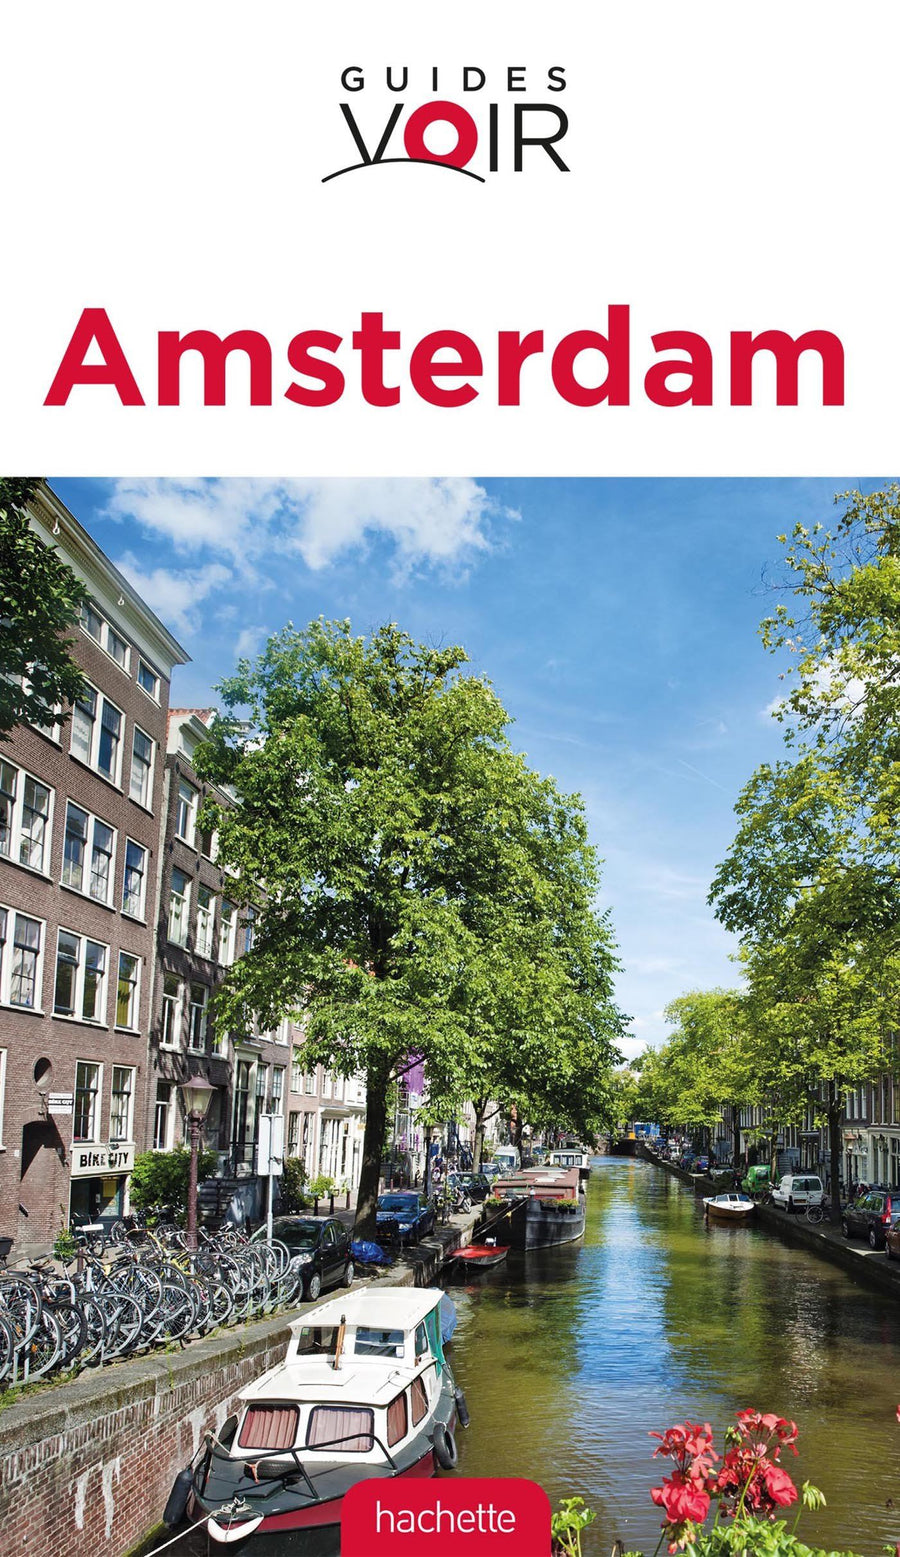 Guide de voyage - Amsterdam | Guides Voir guide de voyage Guides Voir 